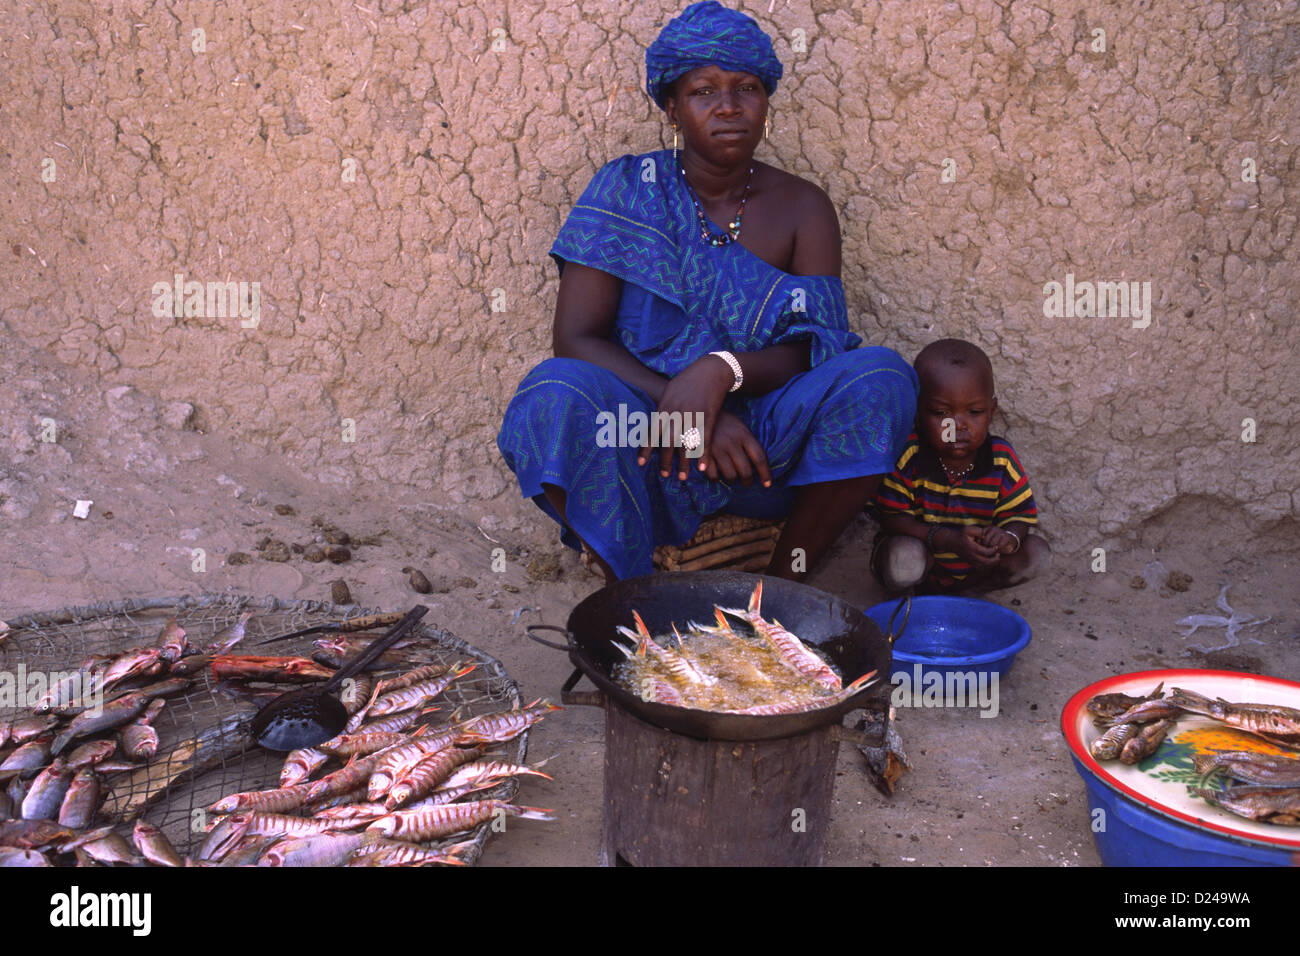 Eine Frau verkauft frisch gekochte Fisch auf einem Markt in Mali, Westafrika. Sie trägt einen Boubou - traditionellen Gewand Kleid. Stockfoto